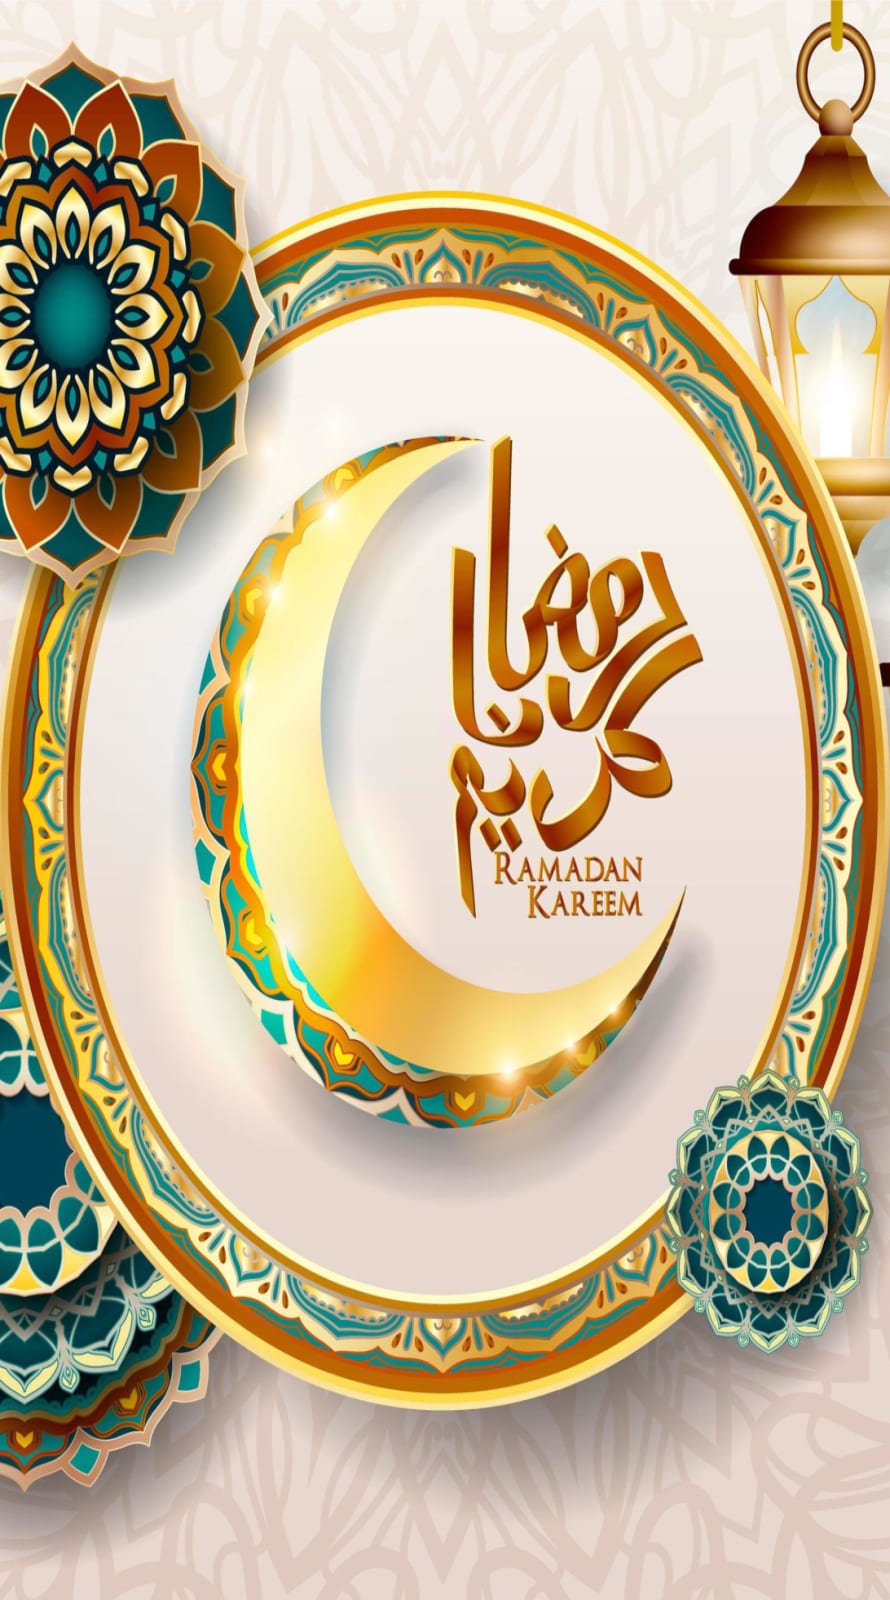 Ramadan kareem wallpapers for iPhone 13